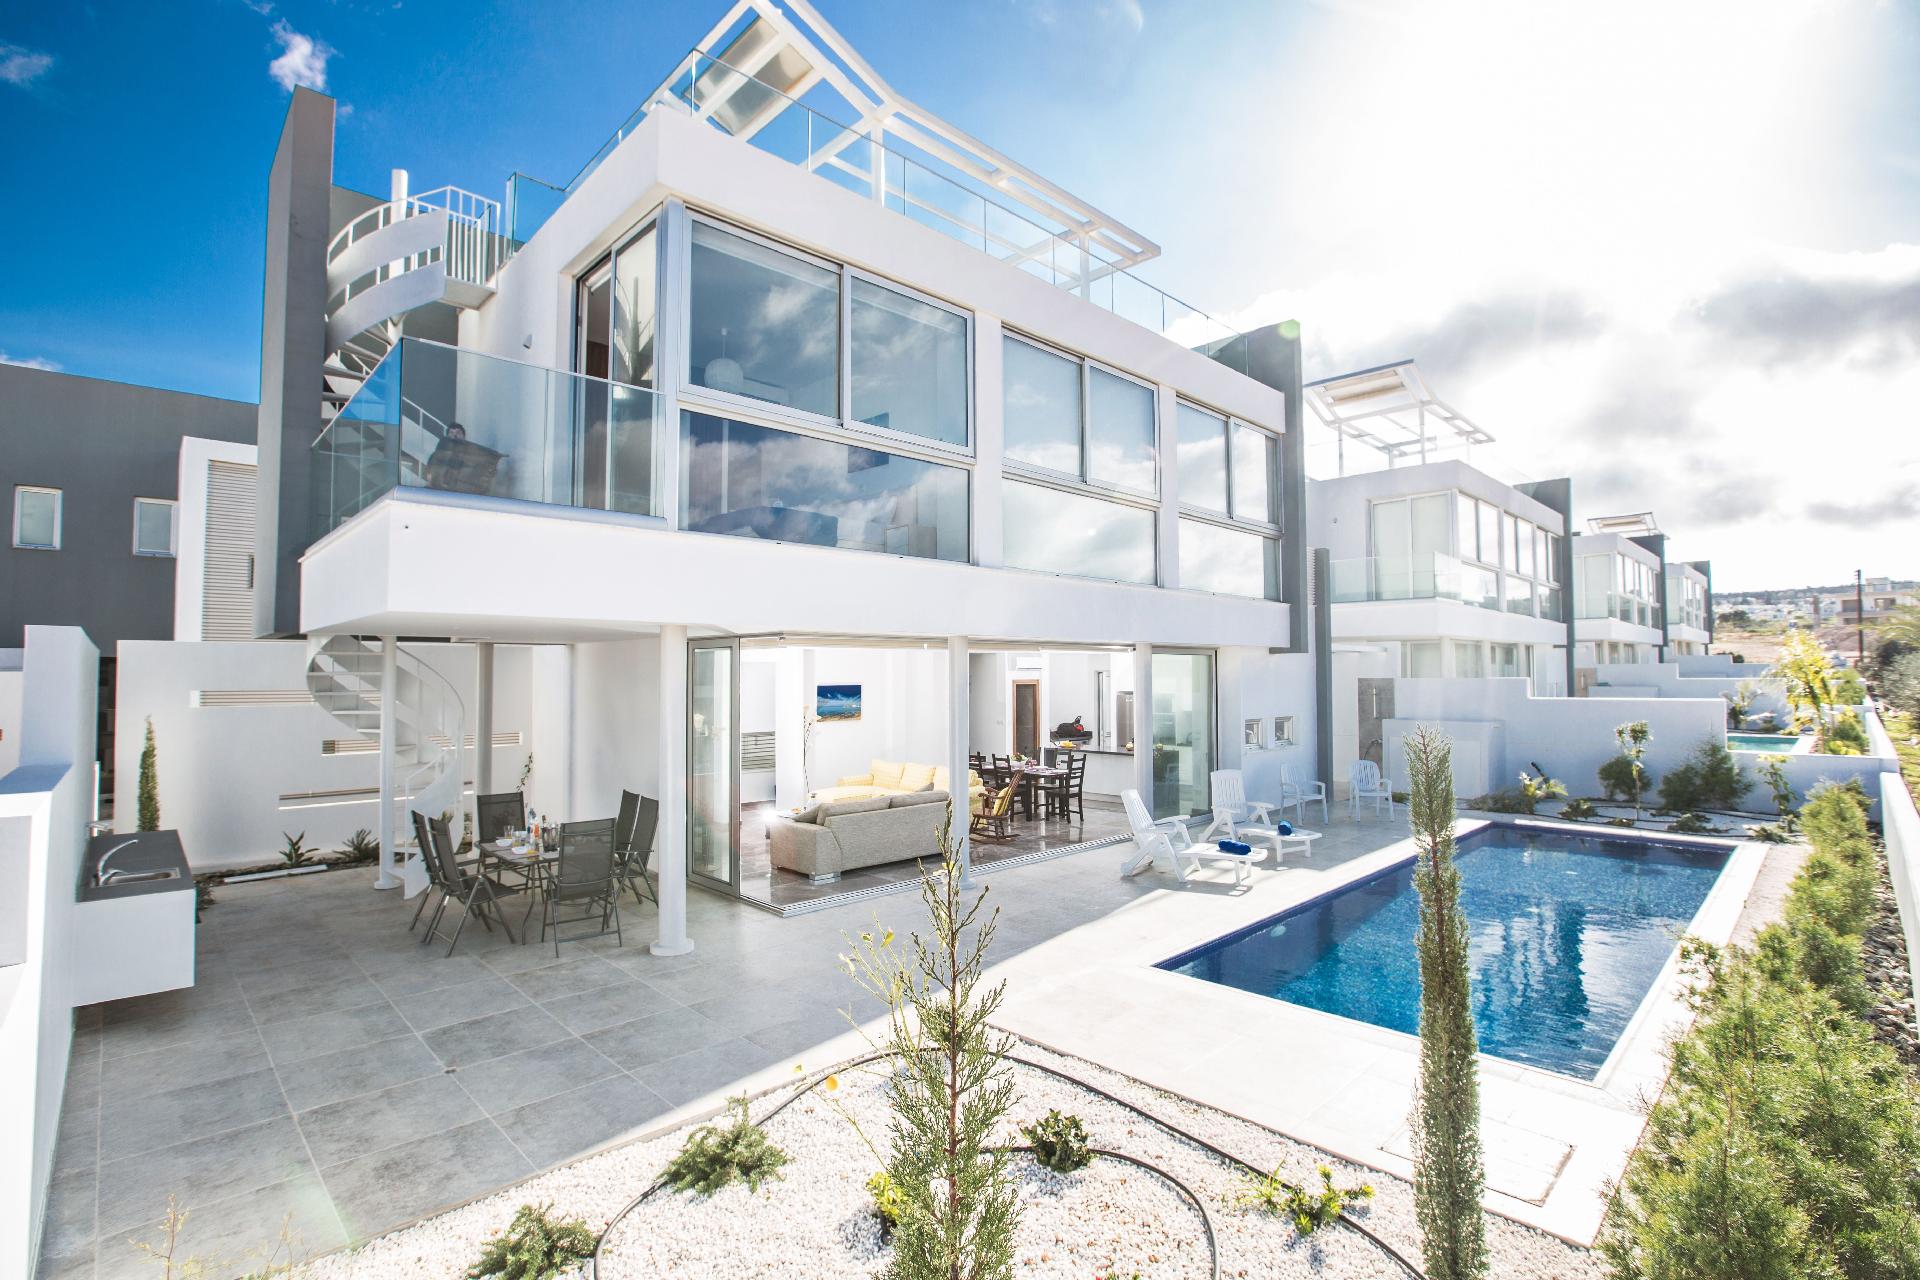 Ferienhaus mit Privatpool für 7 Personen ca.  Ferienhaus in Zypern